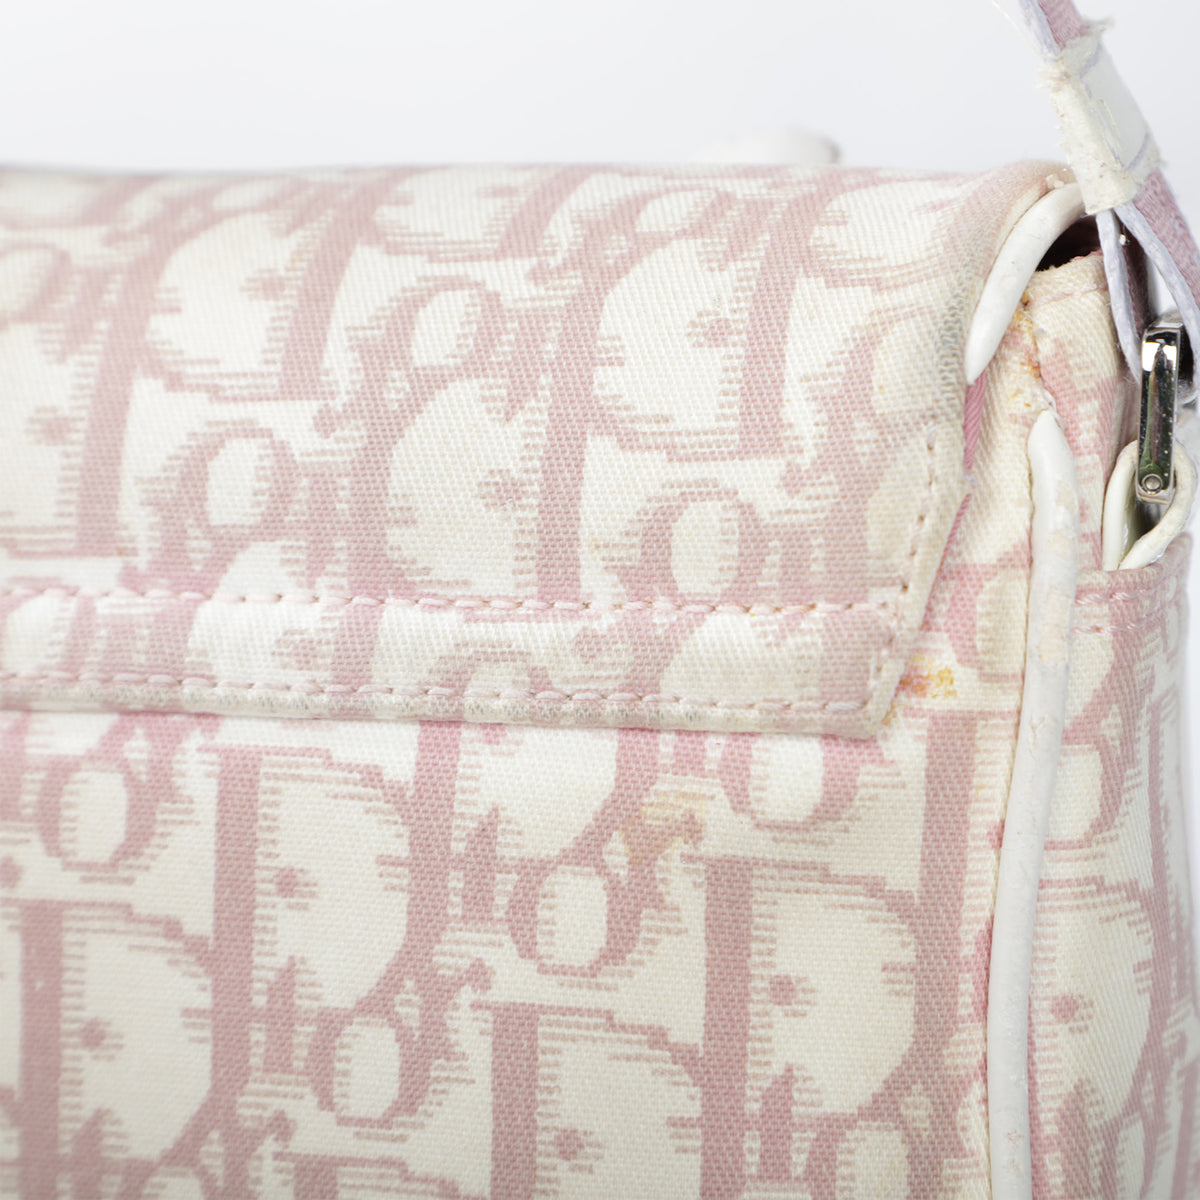 Christian Dior Pink Monogram Mini Bag